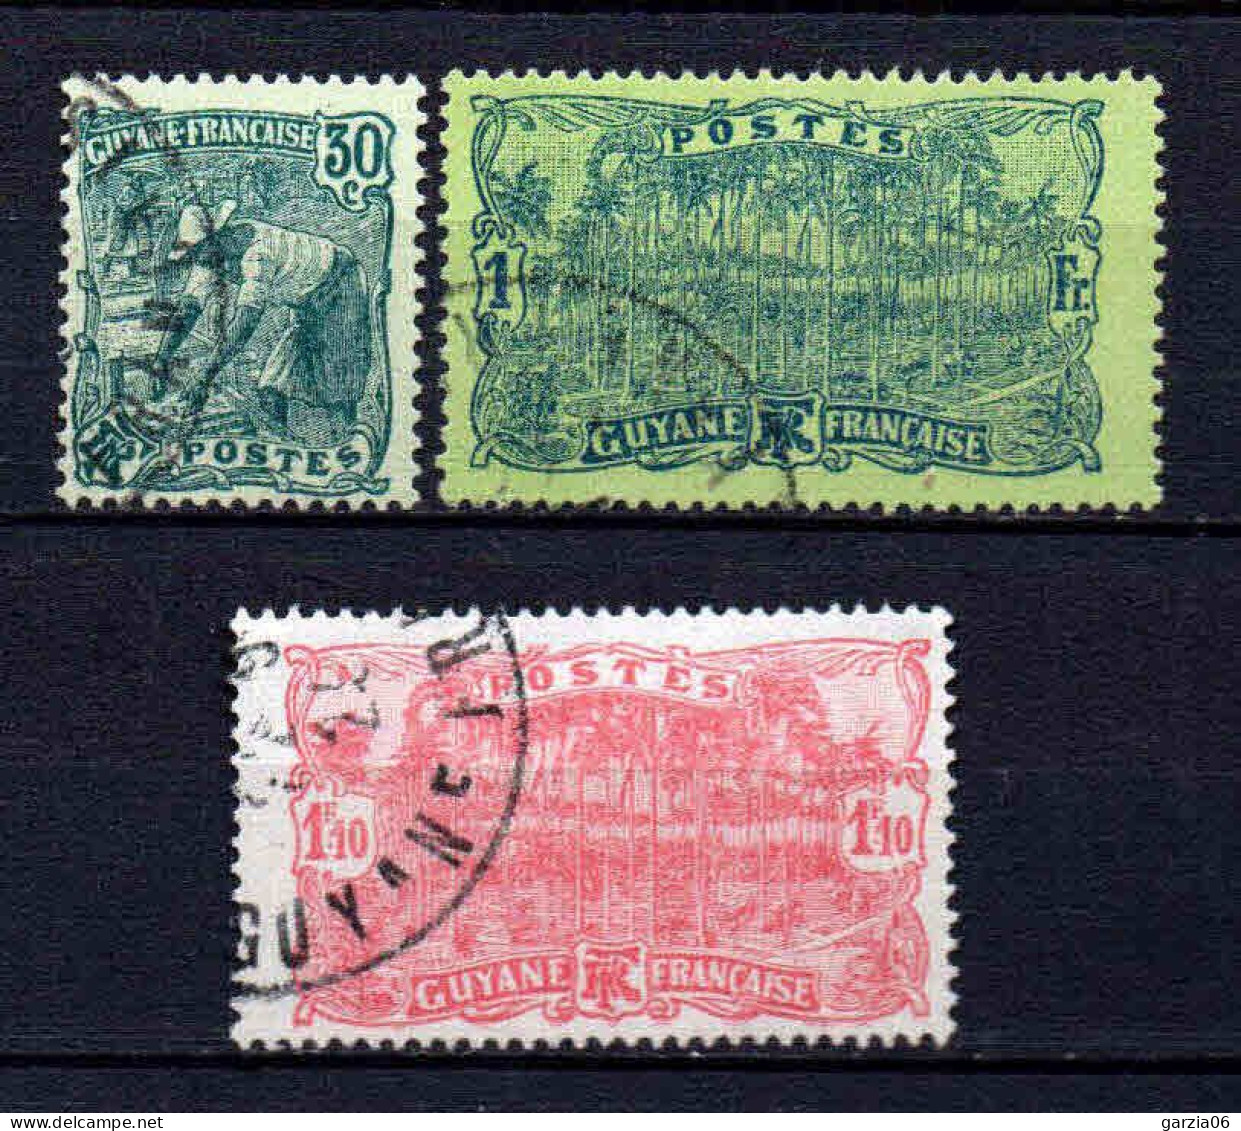 Guyane - 1928 - Tb Antérieur Nouvelles Valeurs   -  N° 106 à 108  - Oblit - Used - Usados